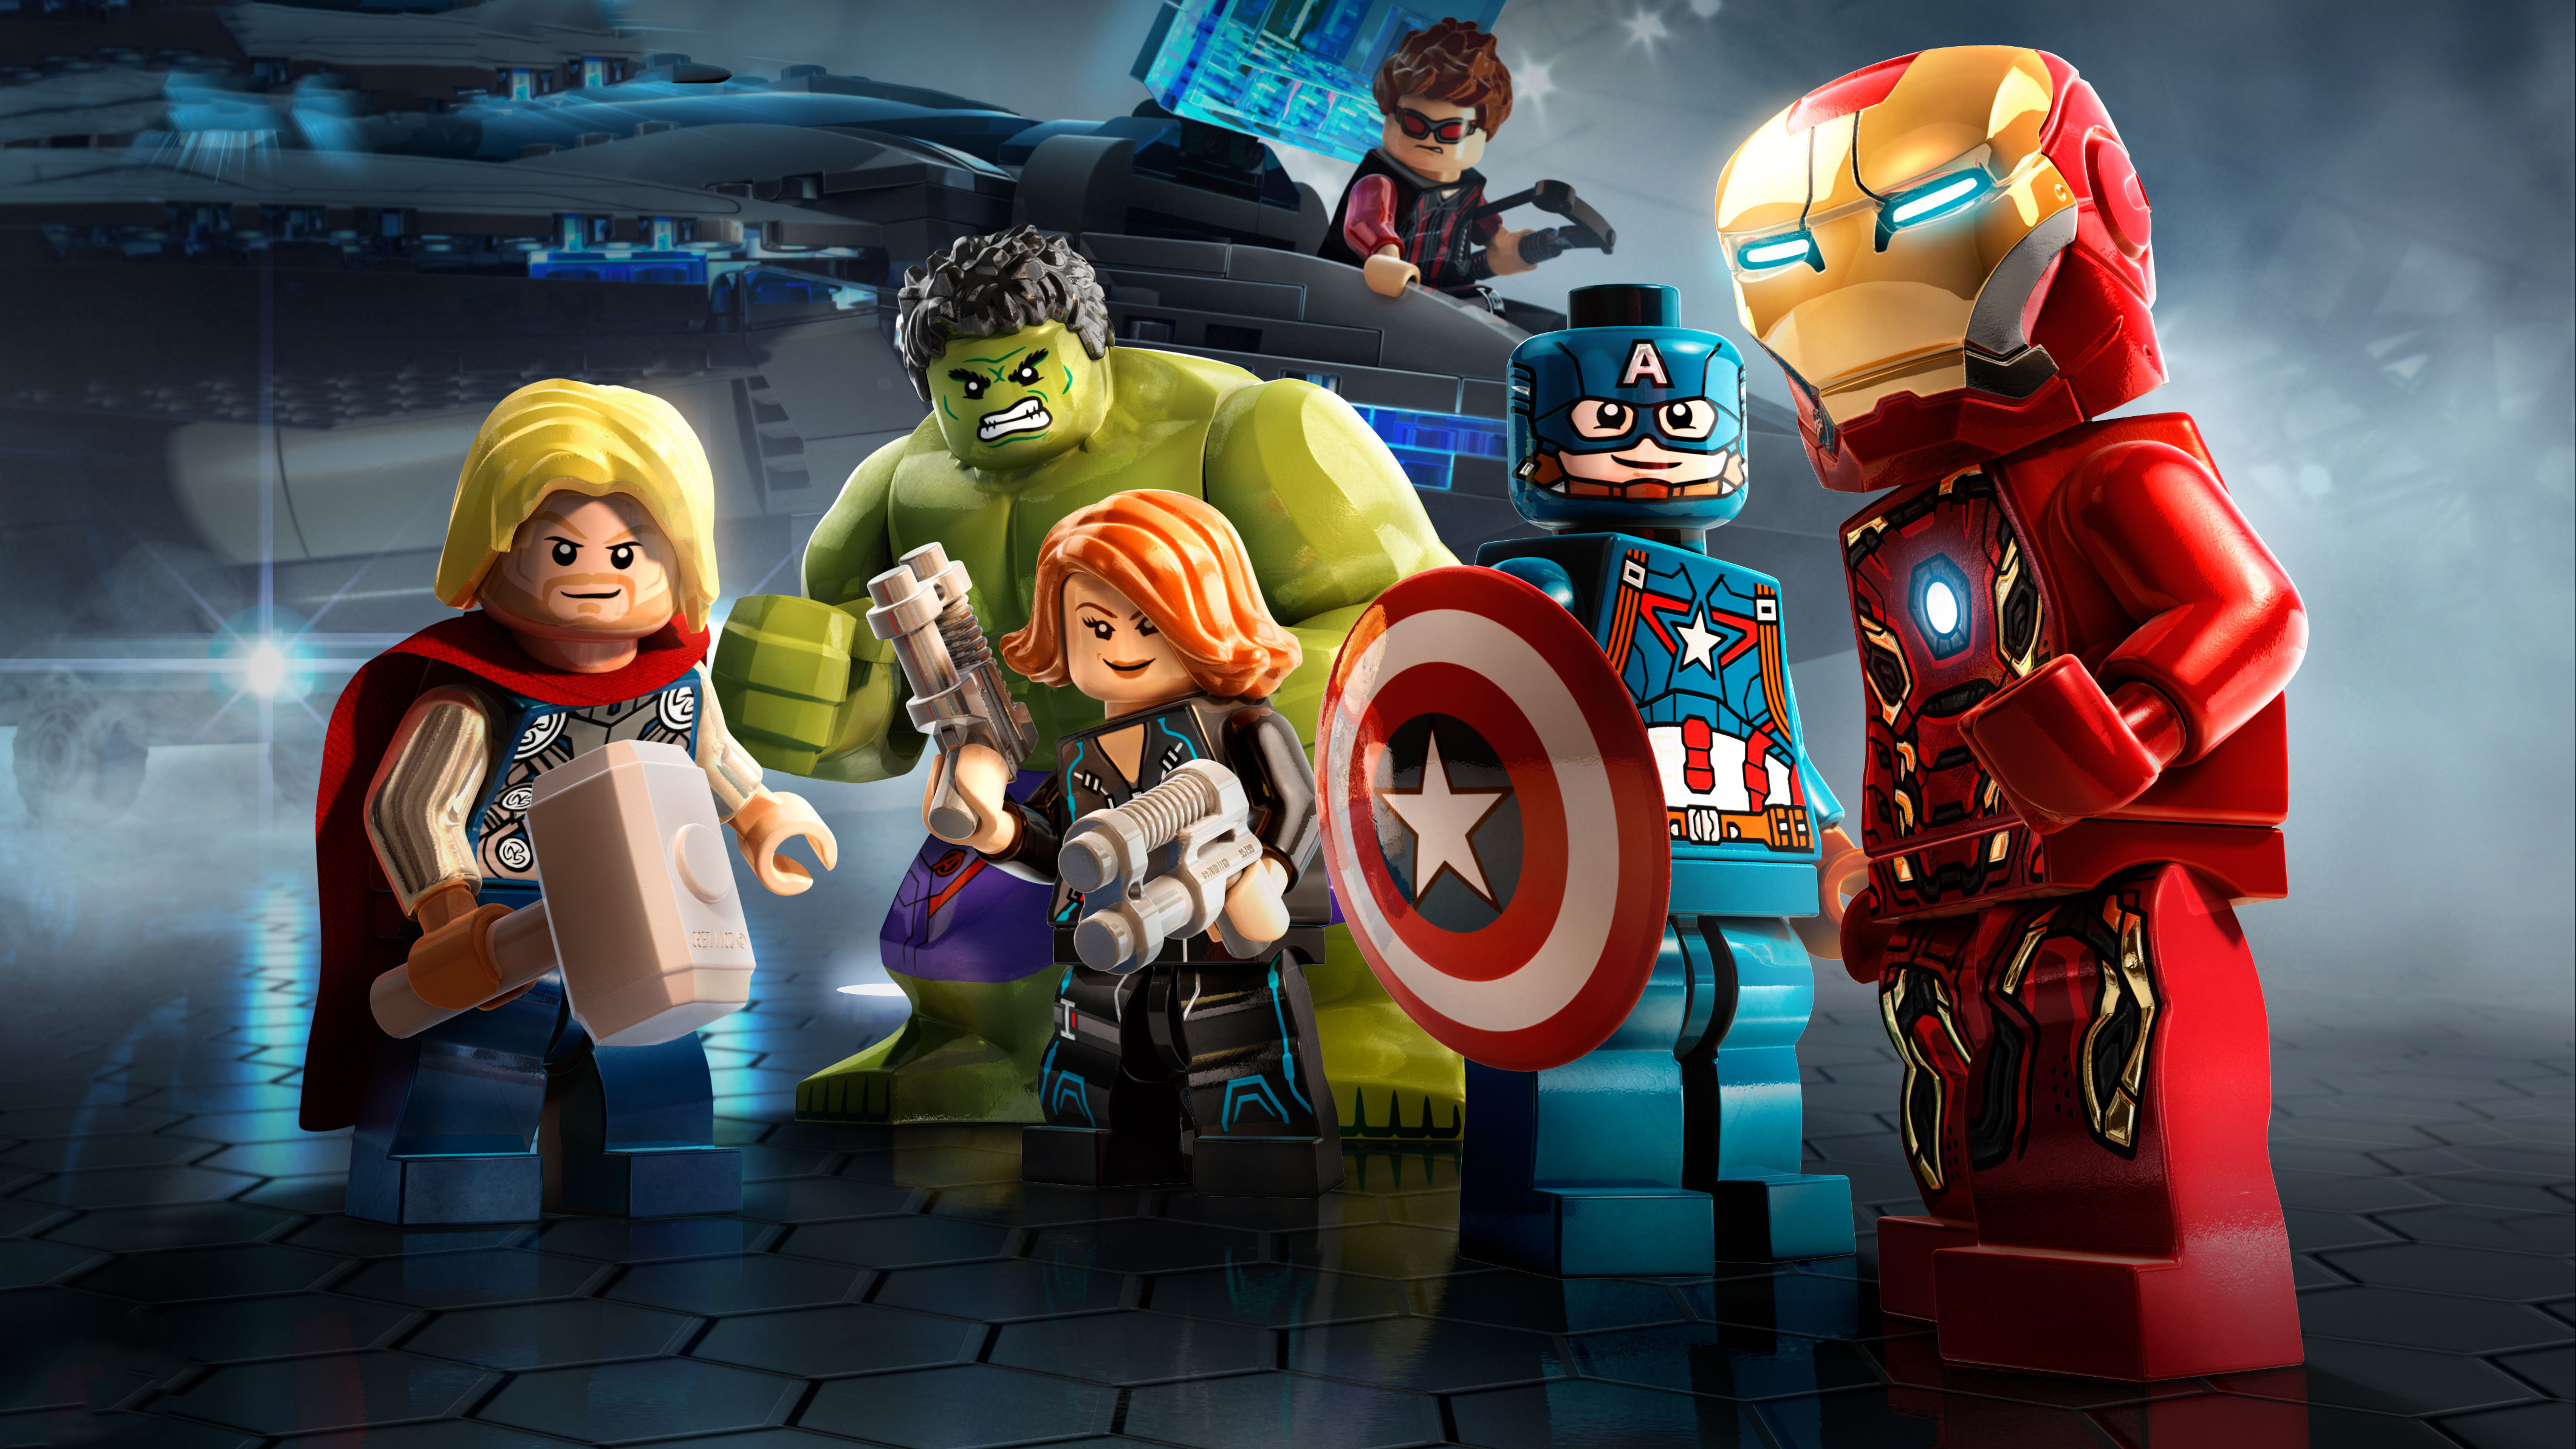 Descargar fondos de escritorio de Lego Marvel's Avengers HD